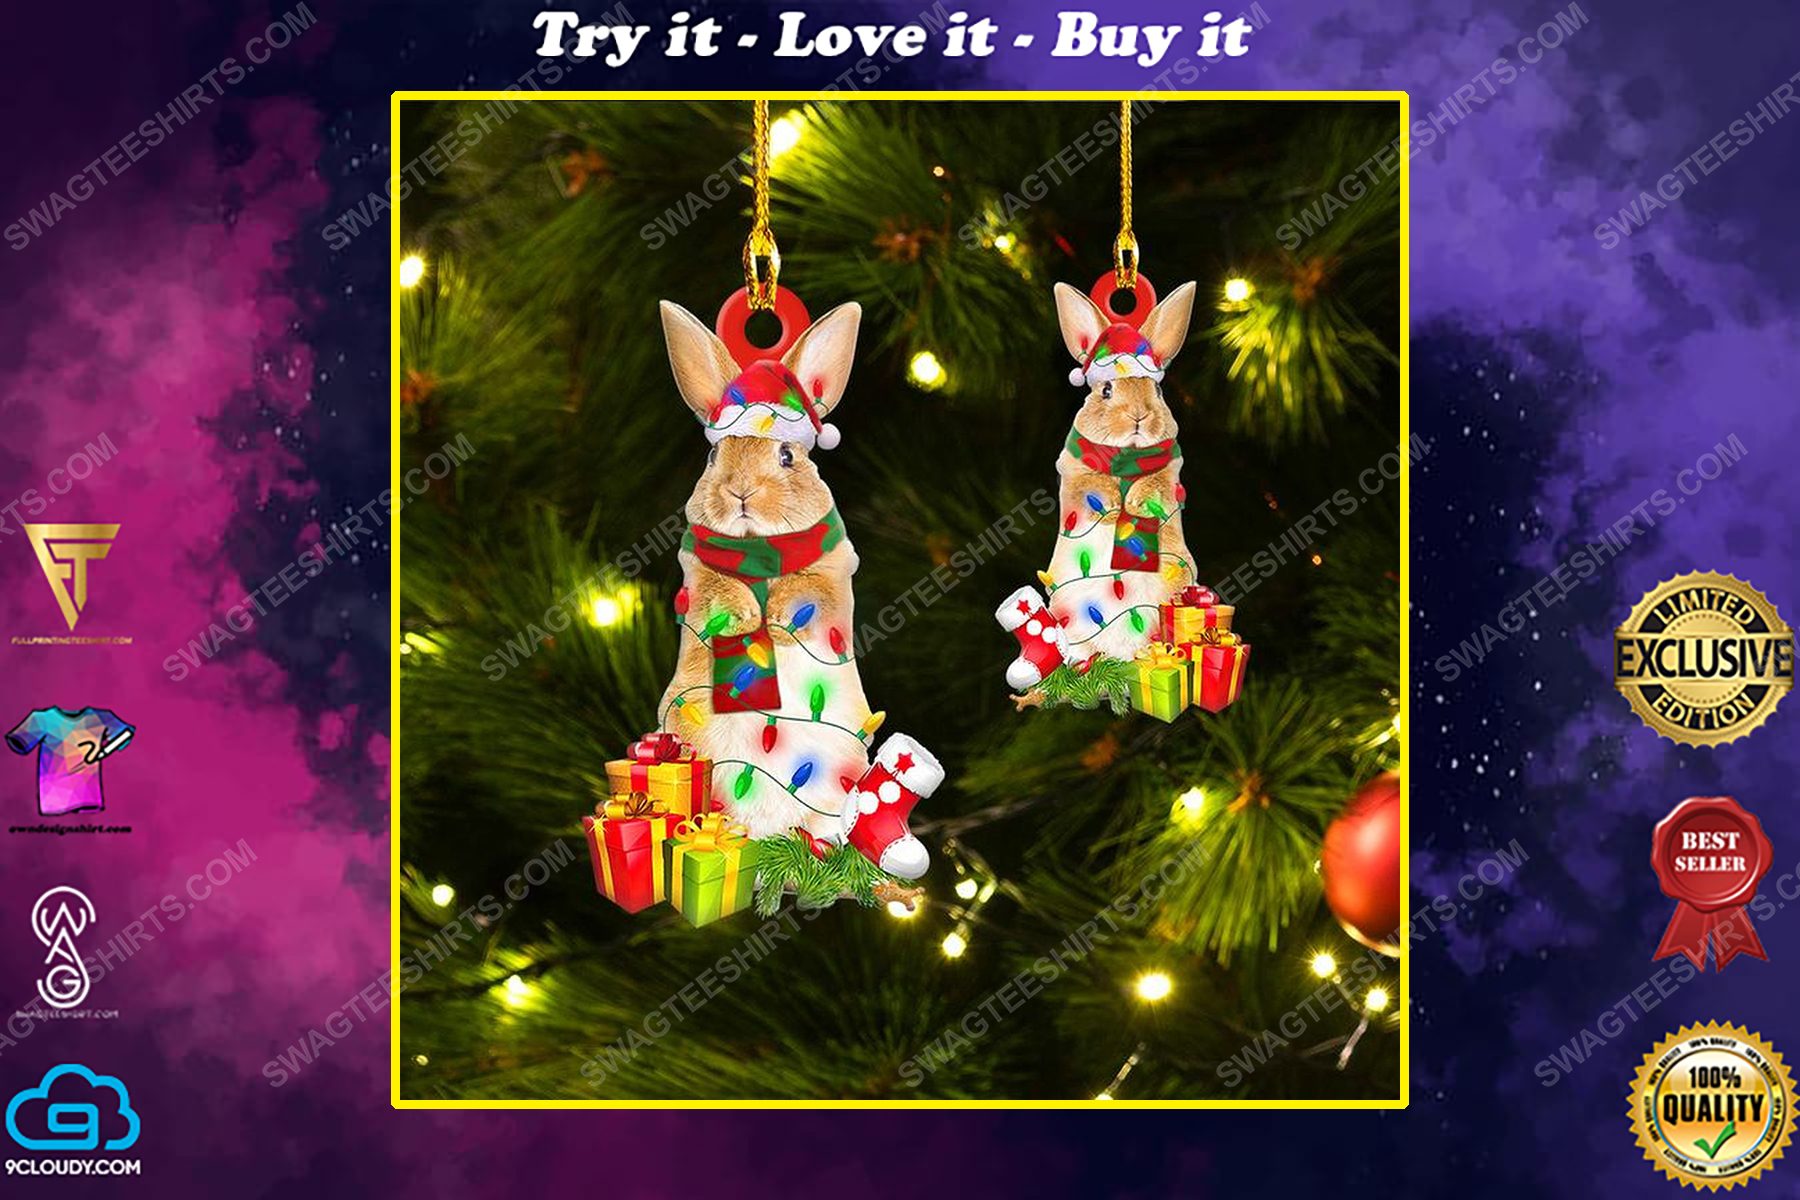 The rabbit and christmas light christmas gift ornament